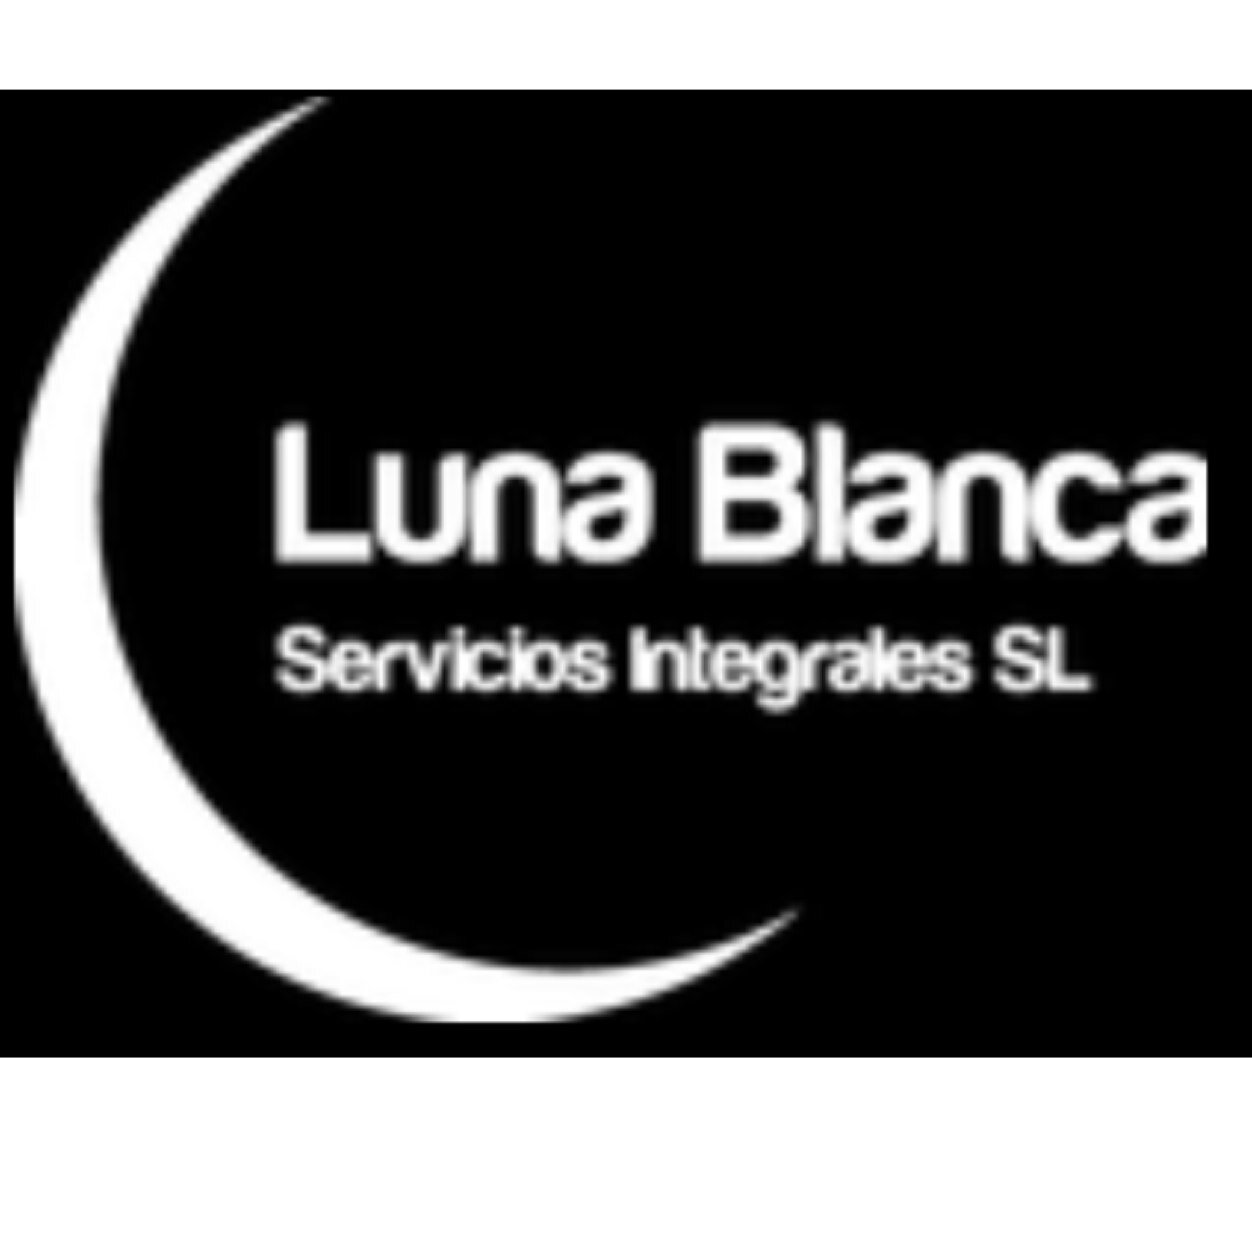 Luna Blanca es una empresa joven, dinámica y vanguardista que ofrece a sus clientes Soluciones Integrales para empresas, comunidades de vecinos,etc.